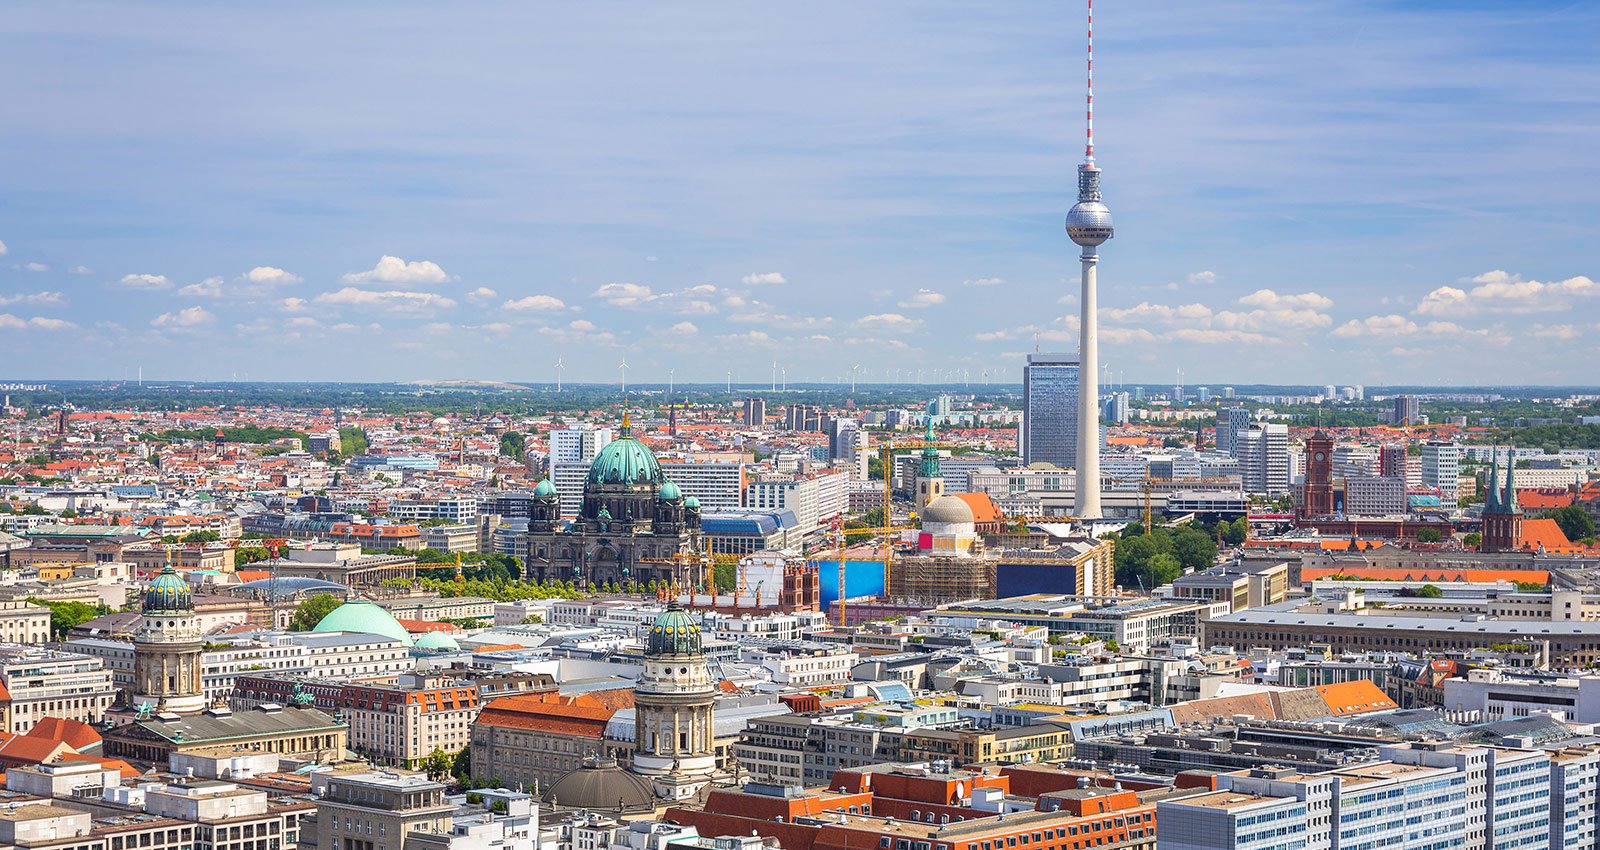 Deutschland schwächelt in der internationalen Steuerwettbewerbsfähigkeit